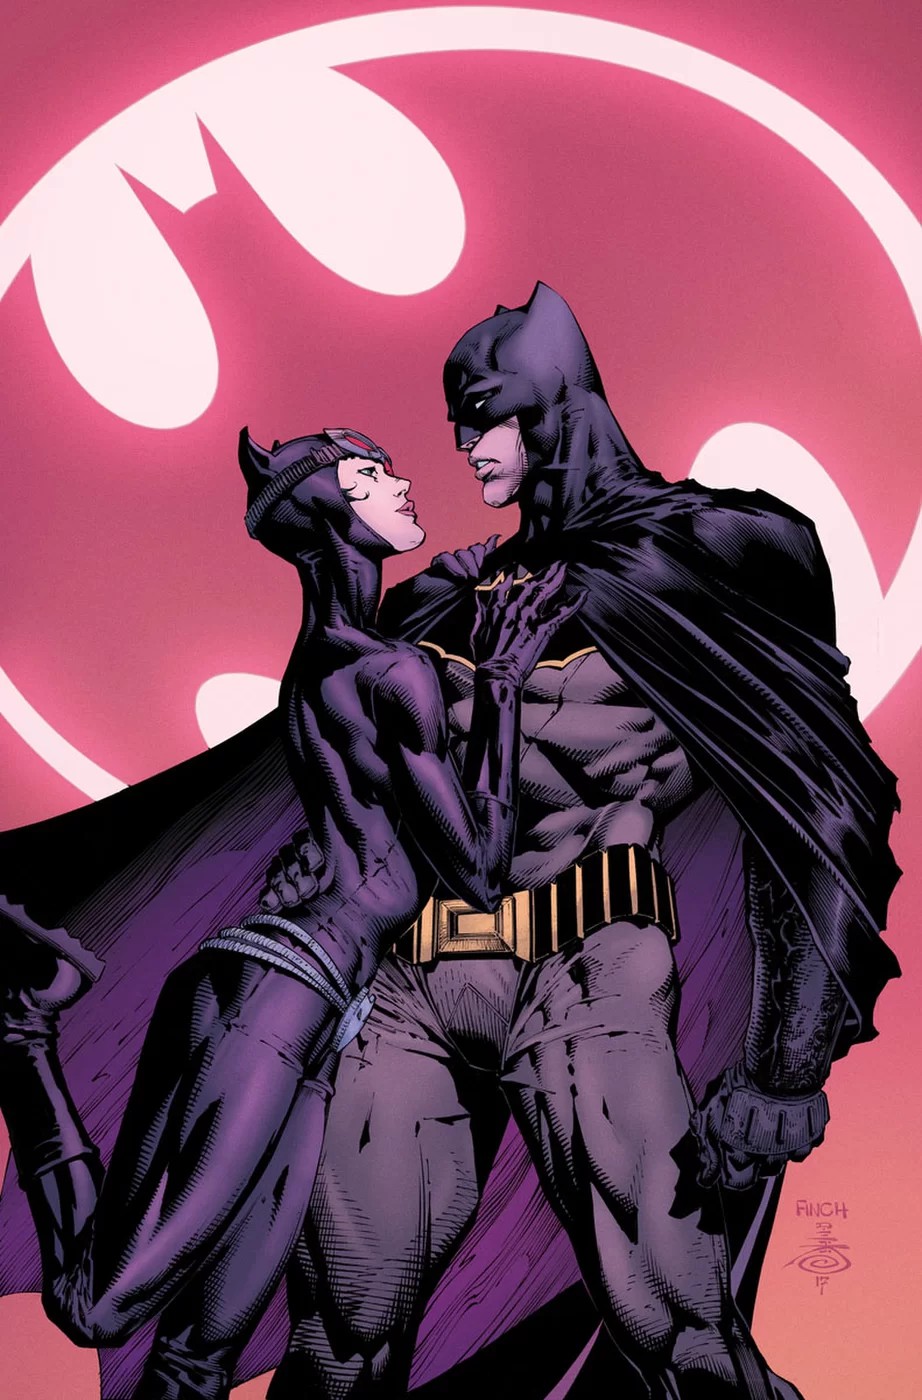 DC大新闻:蝙蝠侠与猫女结婚 小丑不高兴大闹婚